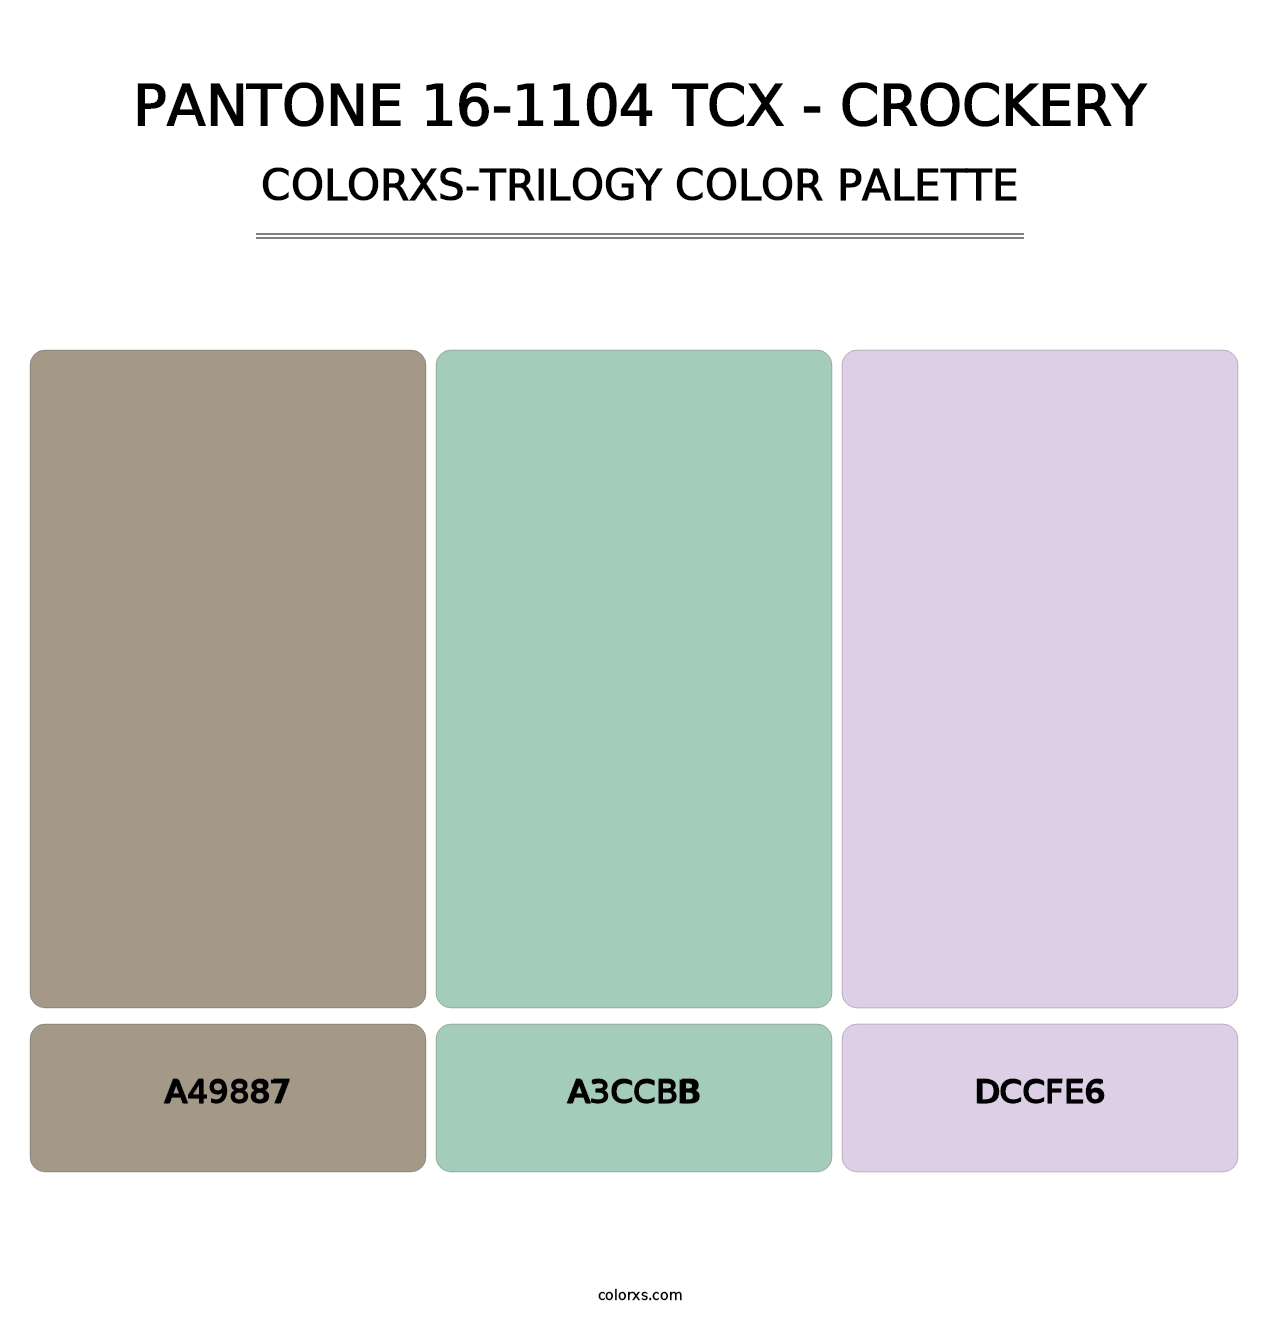 PANTONE 16-1104 TCX - Crockery - Colorxs Trilogy Palette